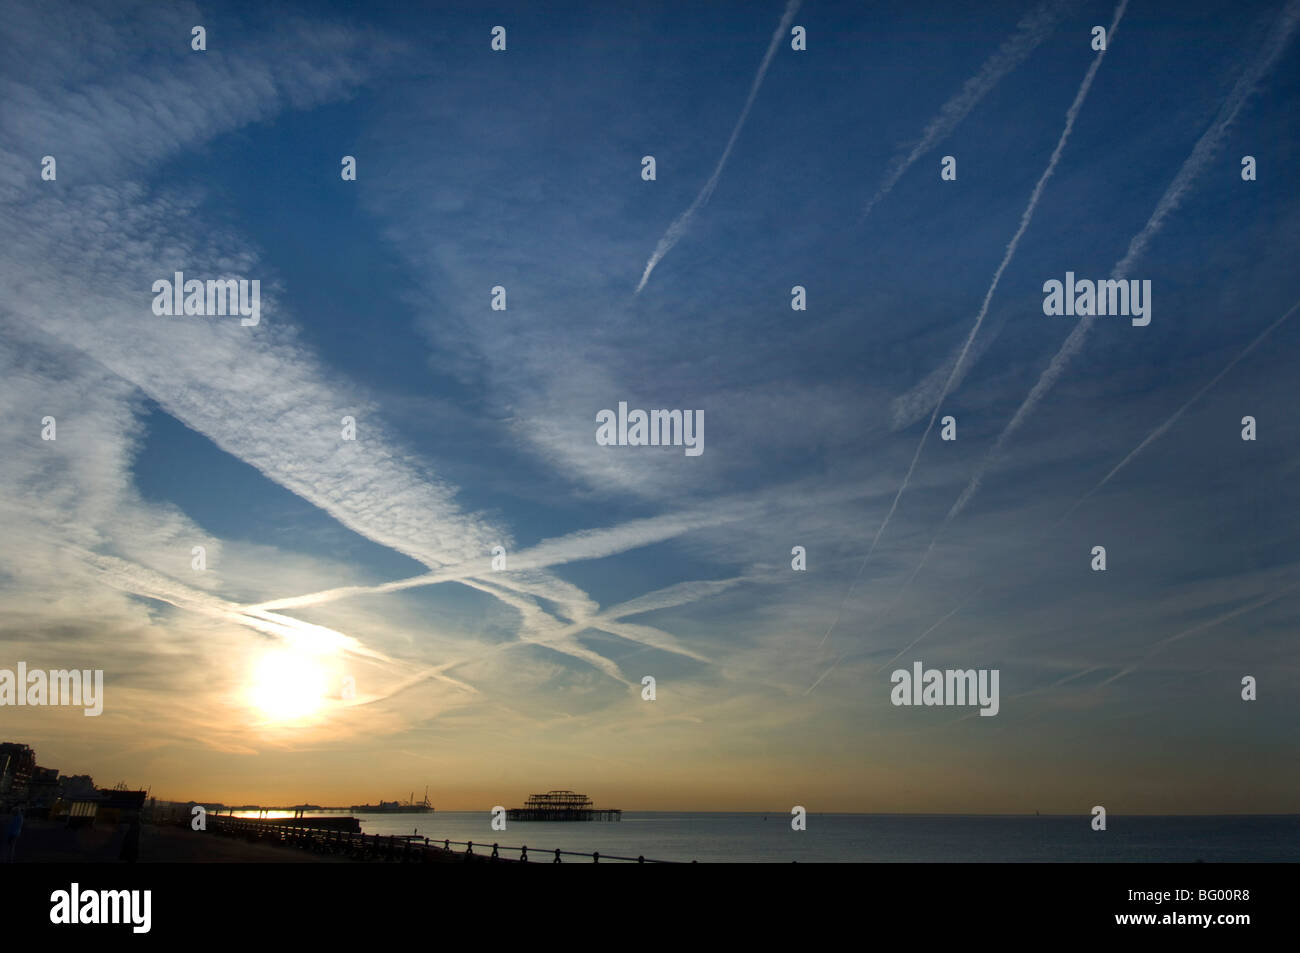 Sonnenaufgang am Brighton Seafront mit Jet-Streifen im Himmel und den West Pier in der Ferne Silhouette. Stockfoto